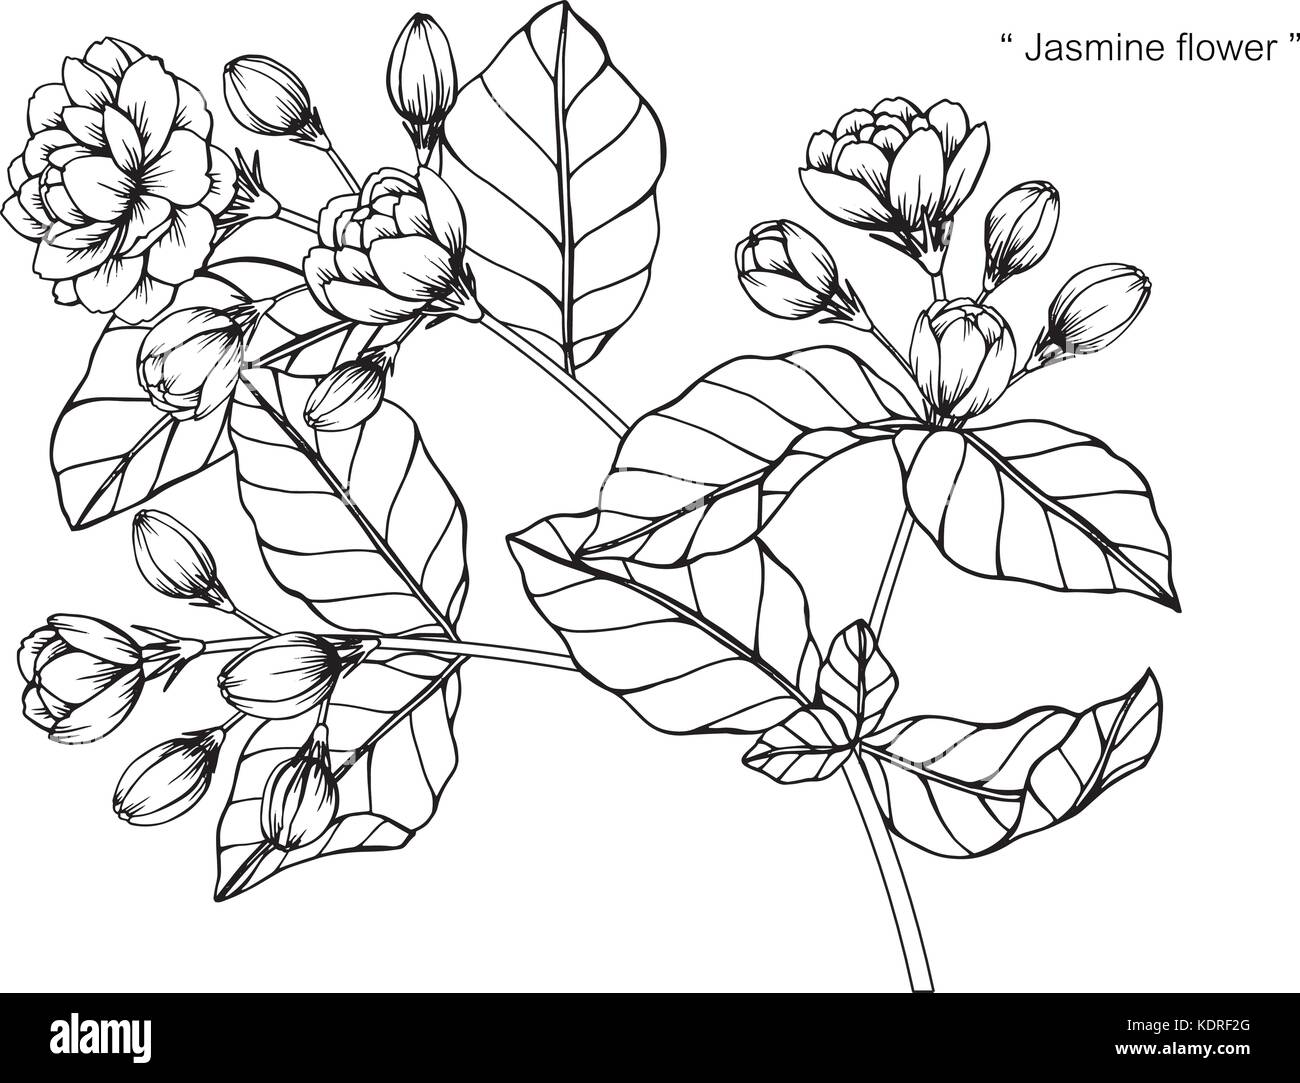 Fiori di gelsomino disegno illustrativo. In bianco e nero con la linea  tecnica Immagine e Vettoriale - Alamy